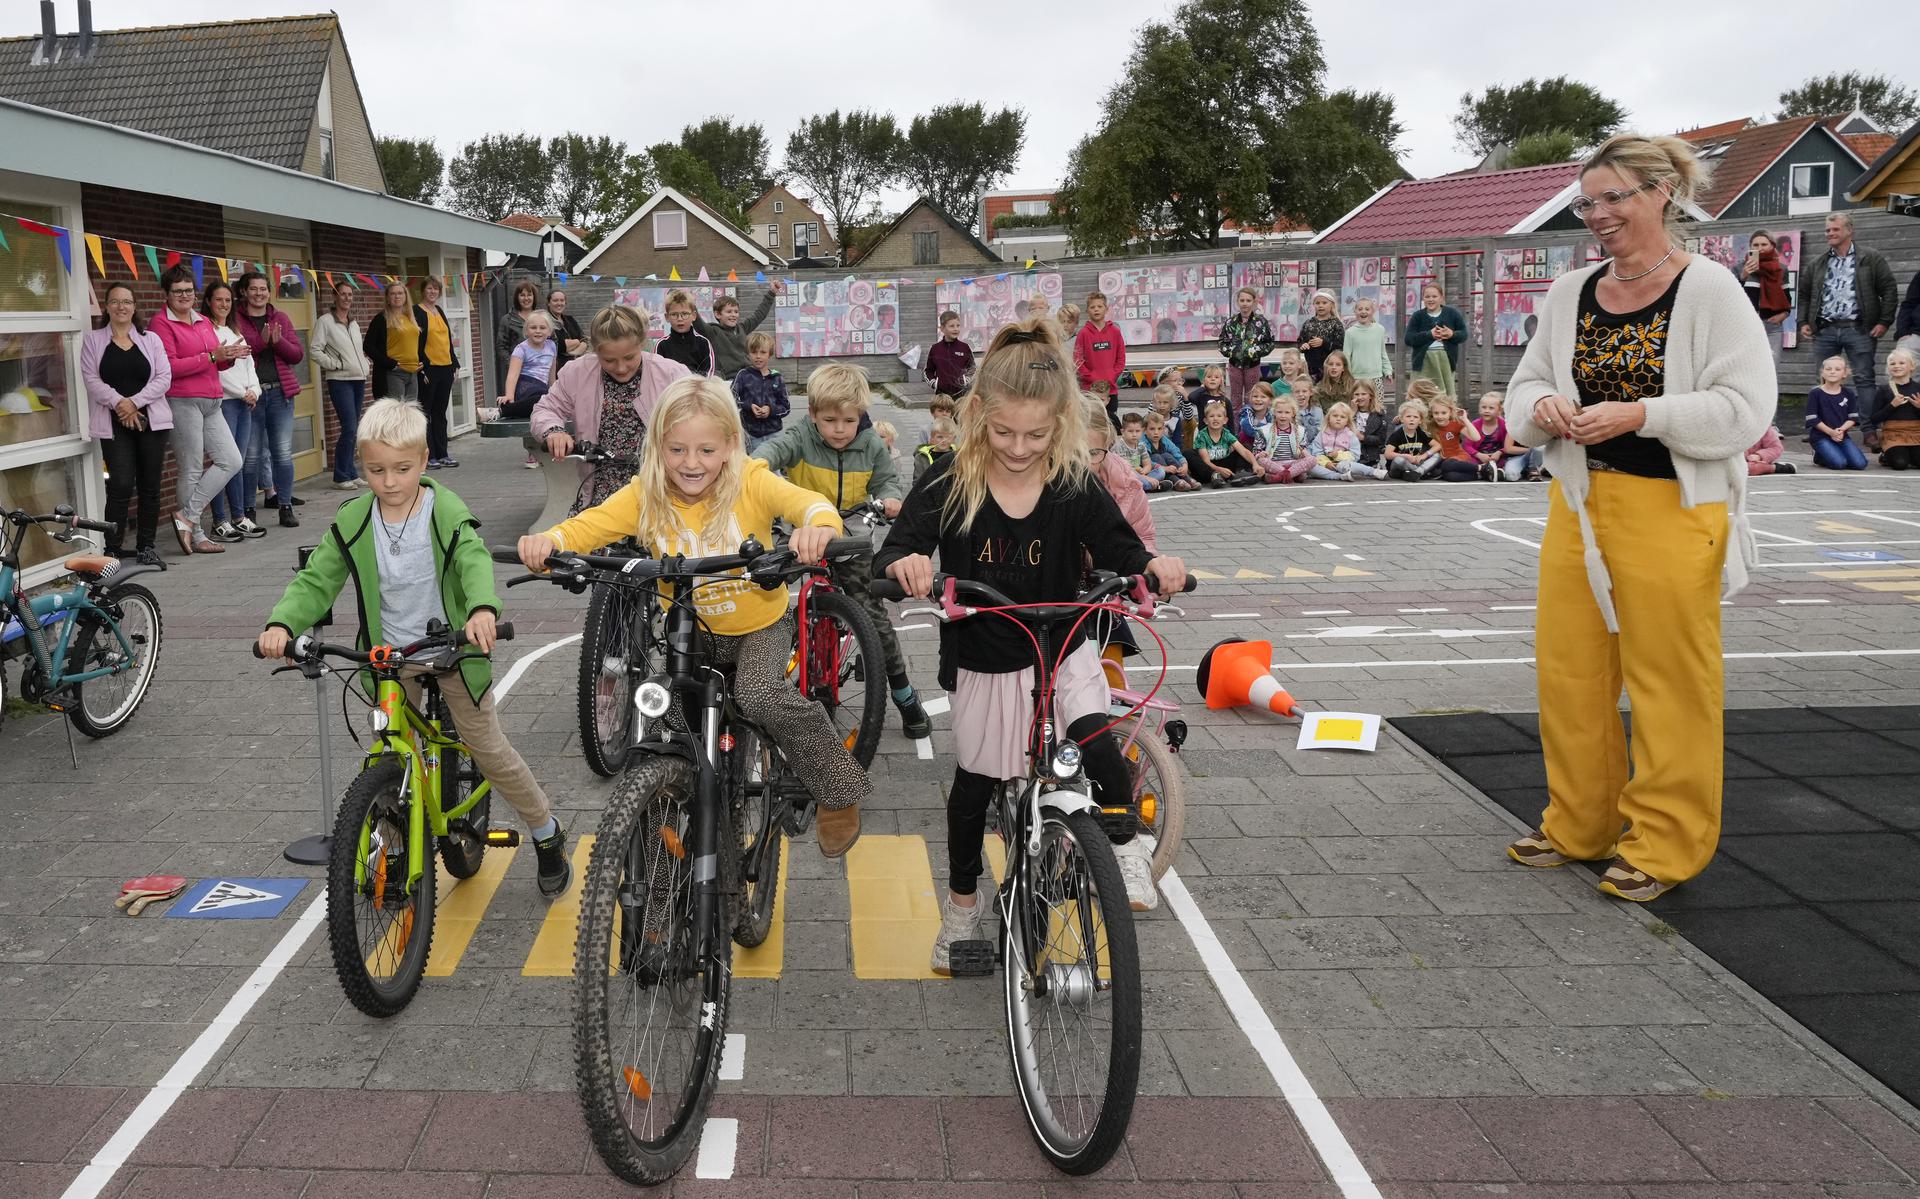 Esmé Bijlsma, directeur van Hunnighouwersgat, kijkt vrolijk toe terwijl de kinderen het eerste rondje over het verkeersplein fietsen.